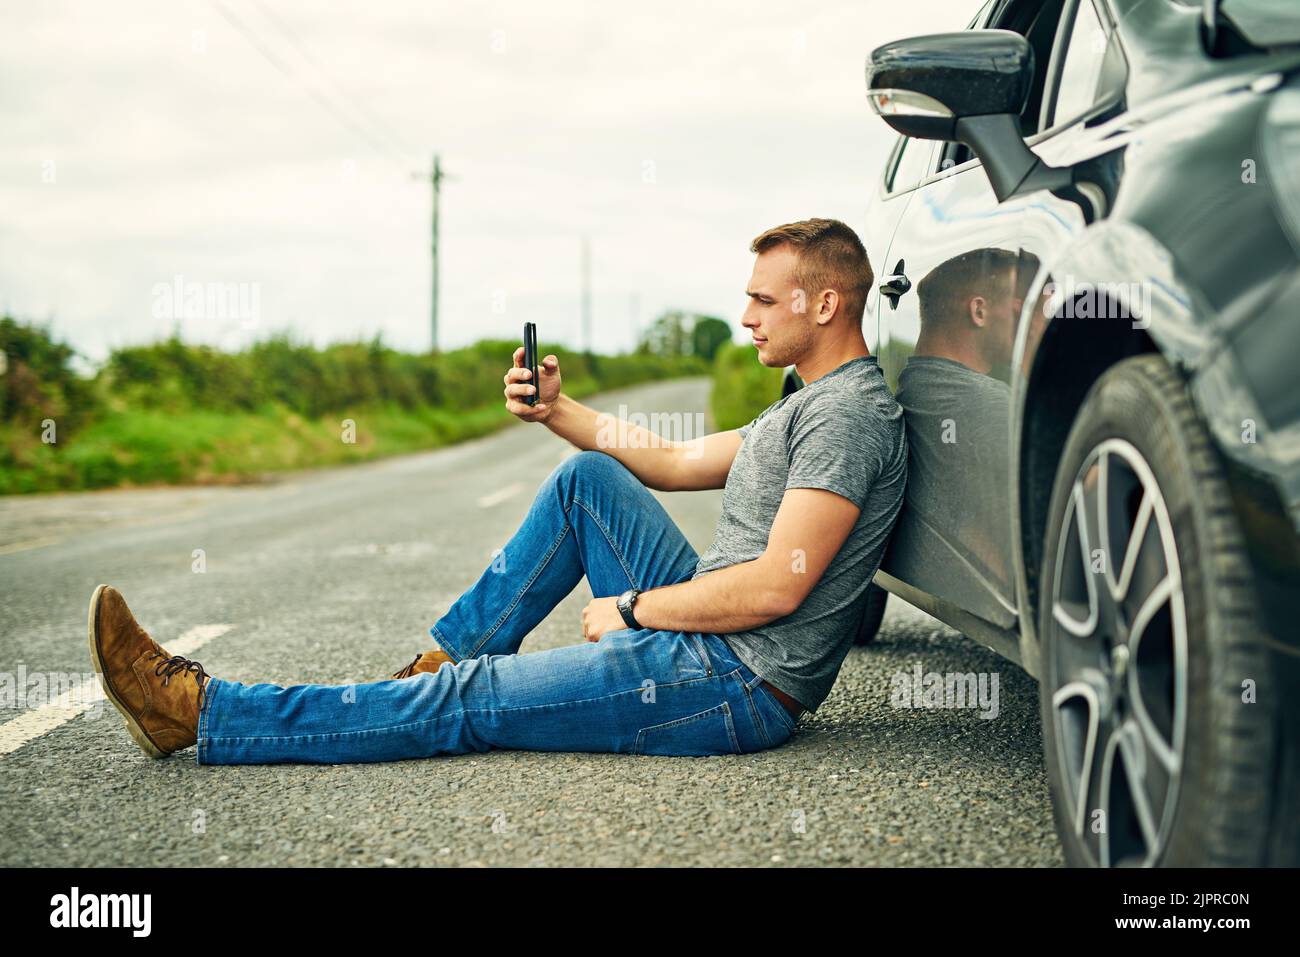 In attesa che le ruote siano trainate via, un giovane uomo in attesa di assistenza stradale dopo la rottura. Foto Stock